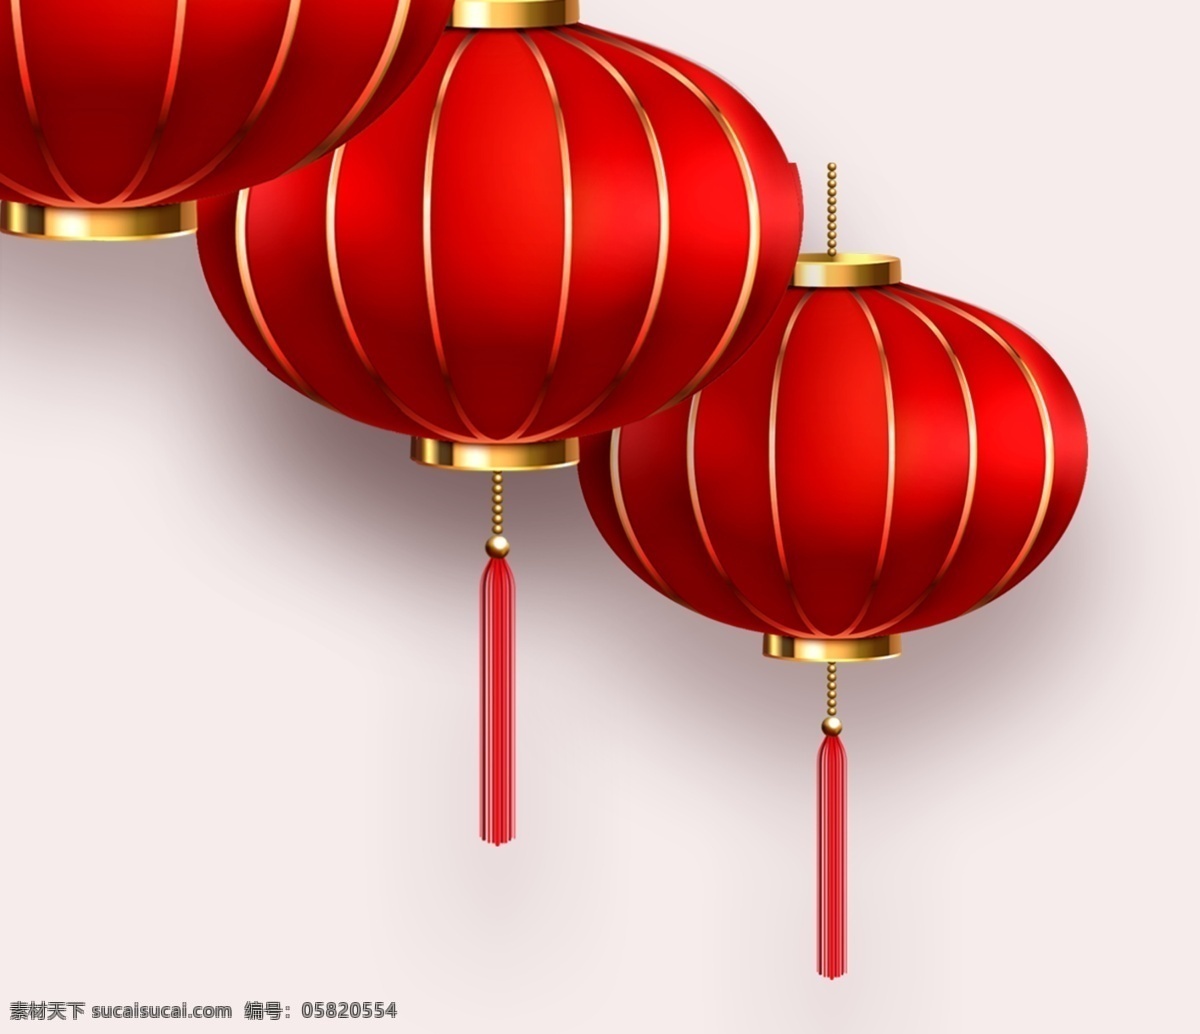 春节 中秋节 节日 节日灯笼 红灯笼 发光灯笼 标识 文化艺术 节日庆祝